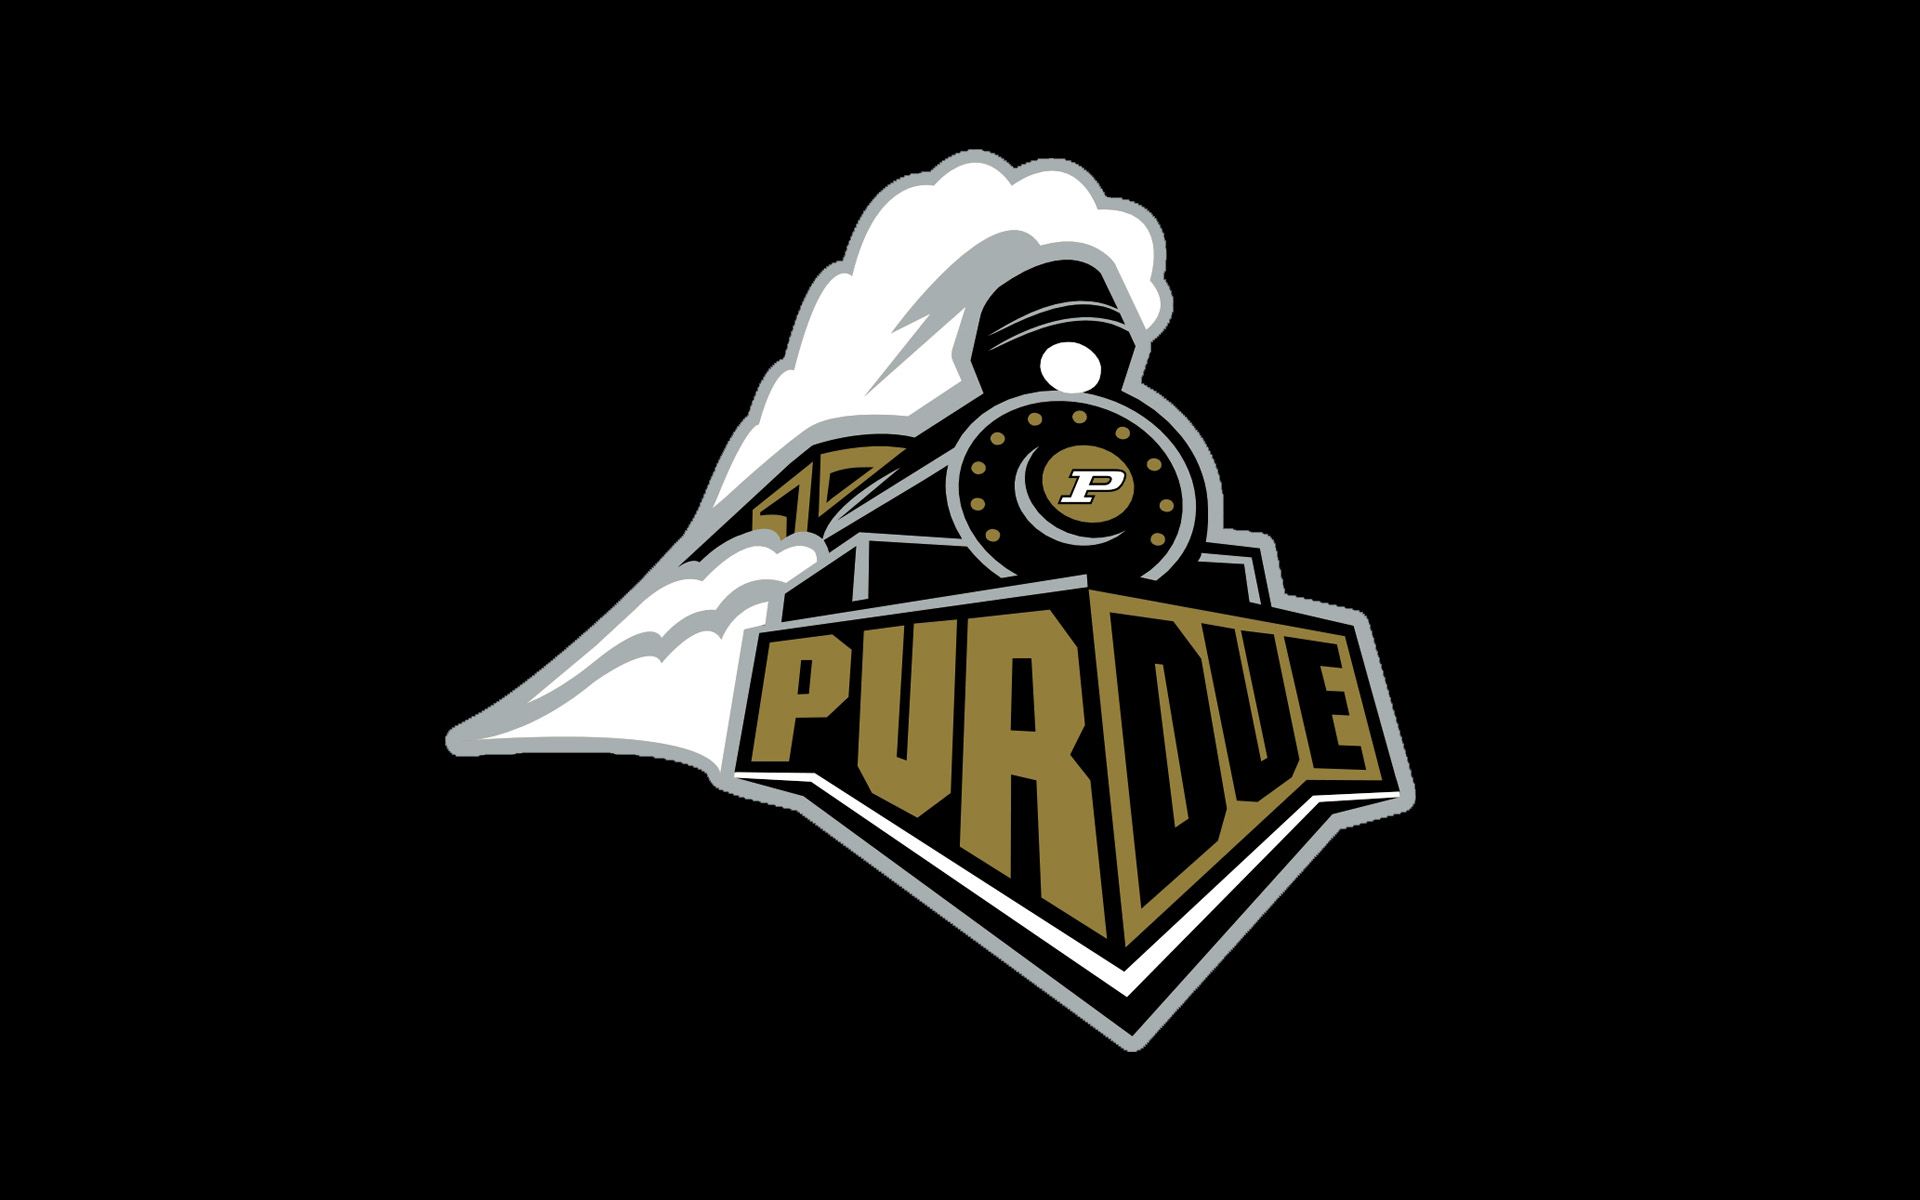 Purdue boilermakers Logos